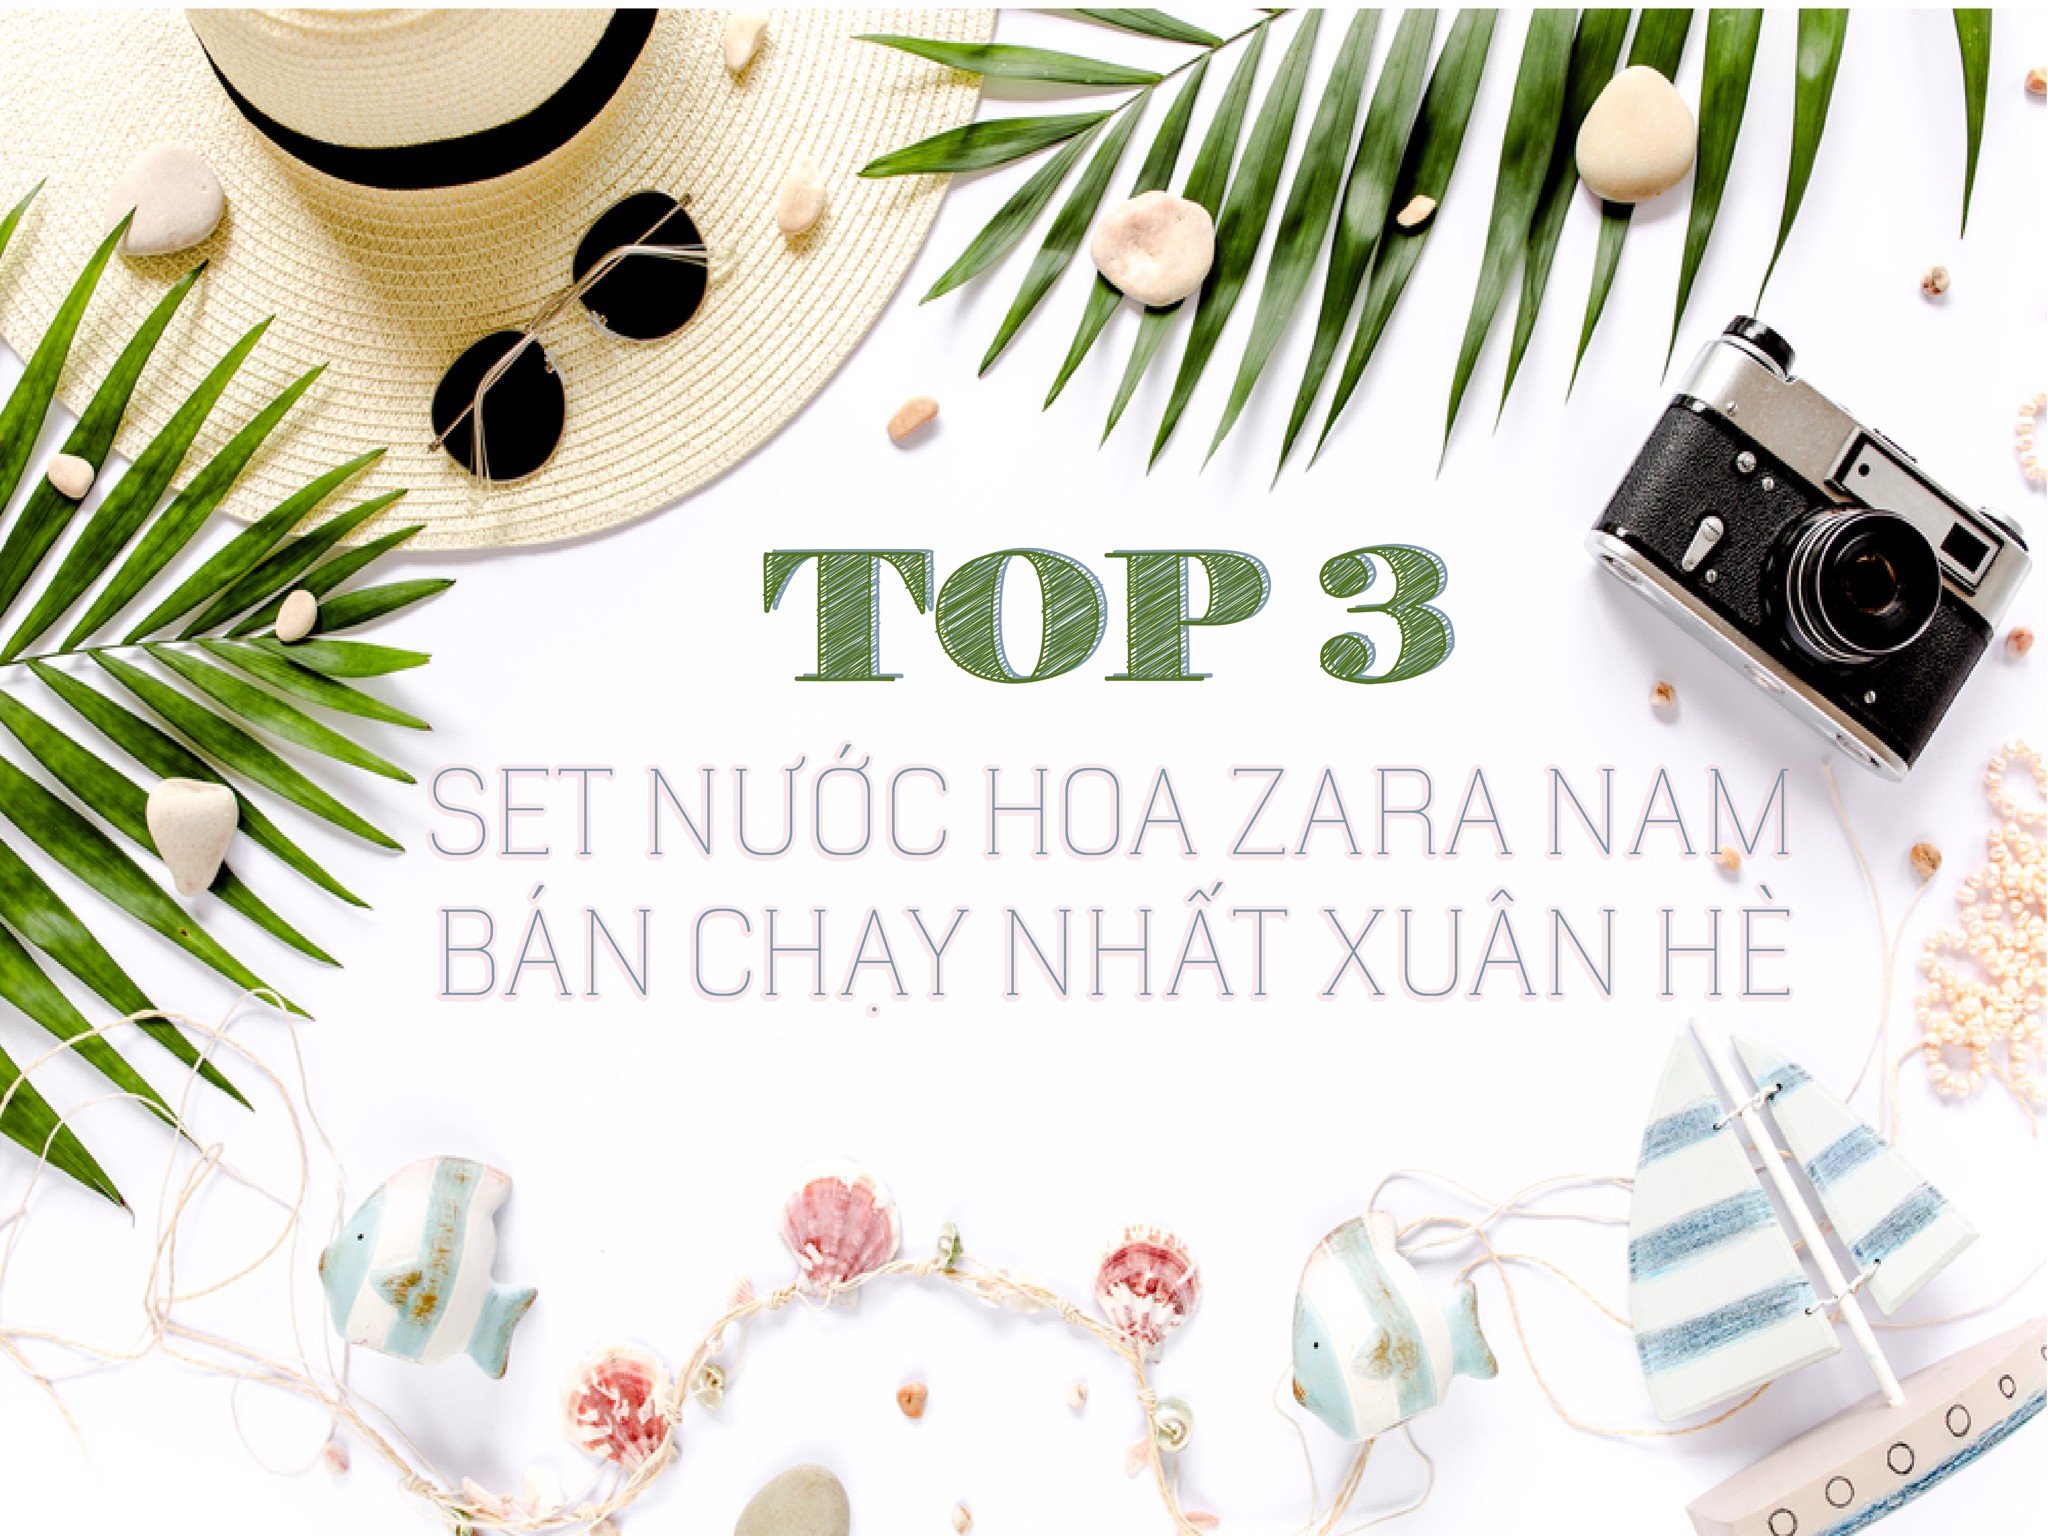 Top 03 set nước hoa Zara nam bán chạy nhất Xuân Hè